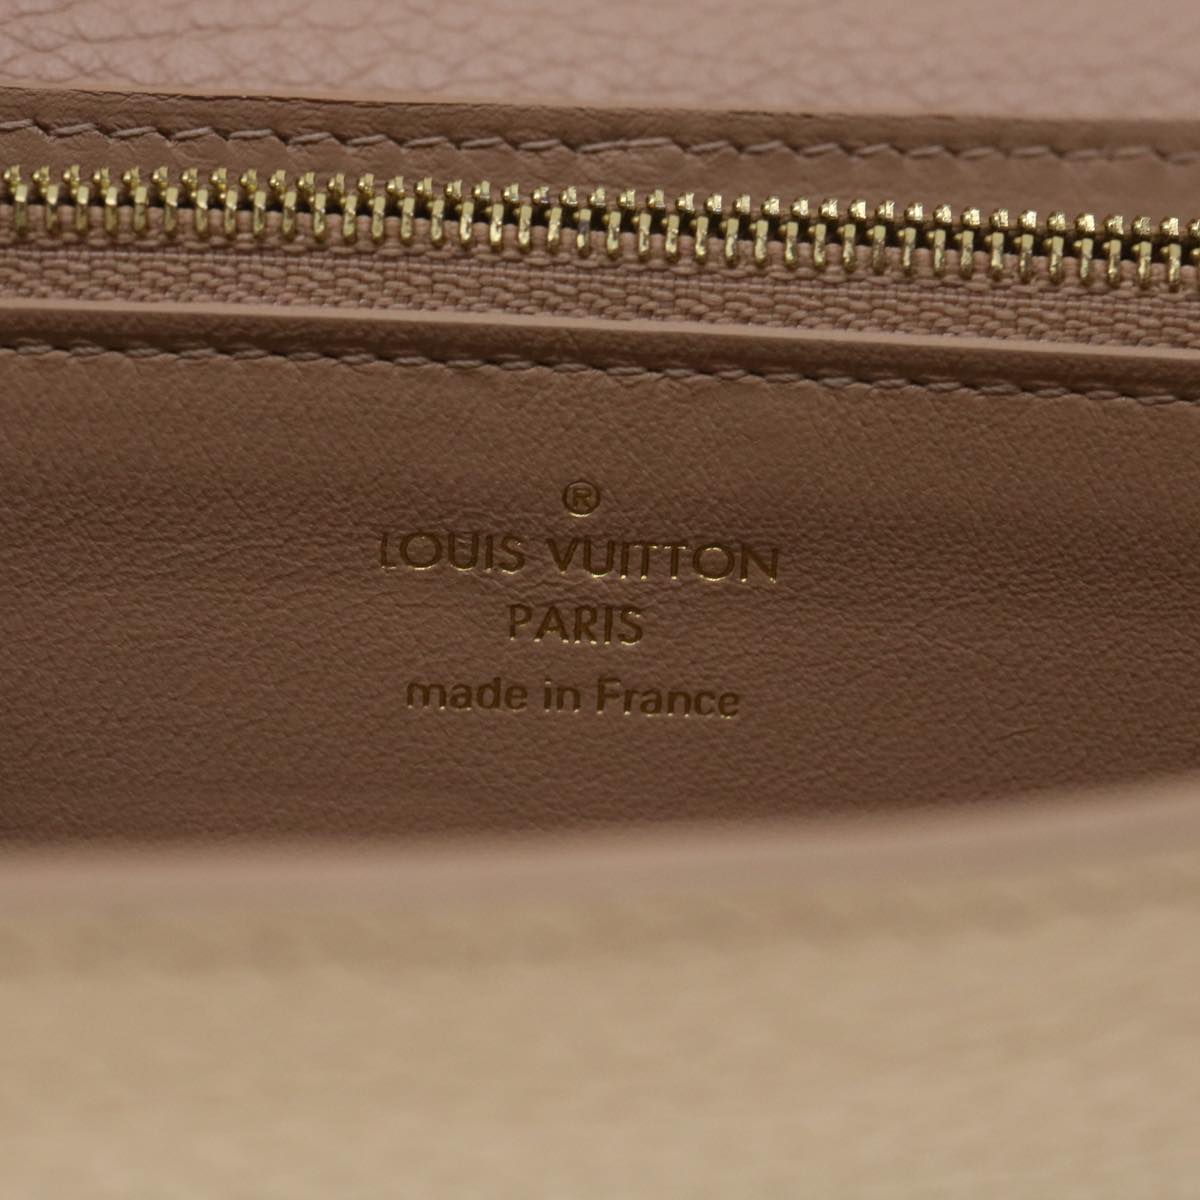 LOUIS VUITTON Portefeuille Capsine Wallet Taurillon Leather Pink M62763 38008